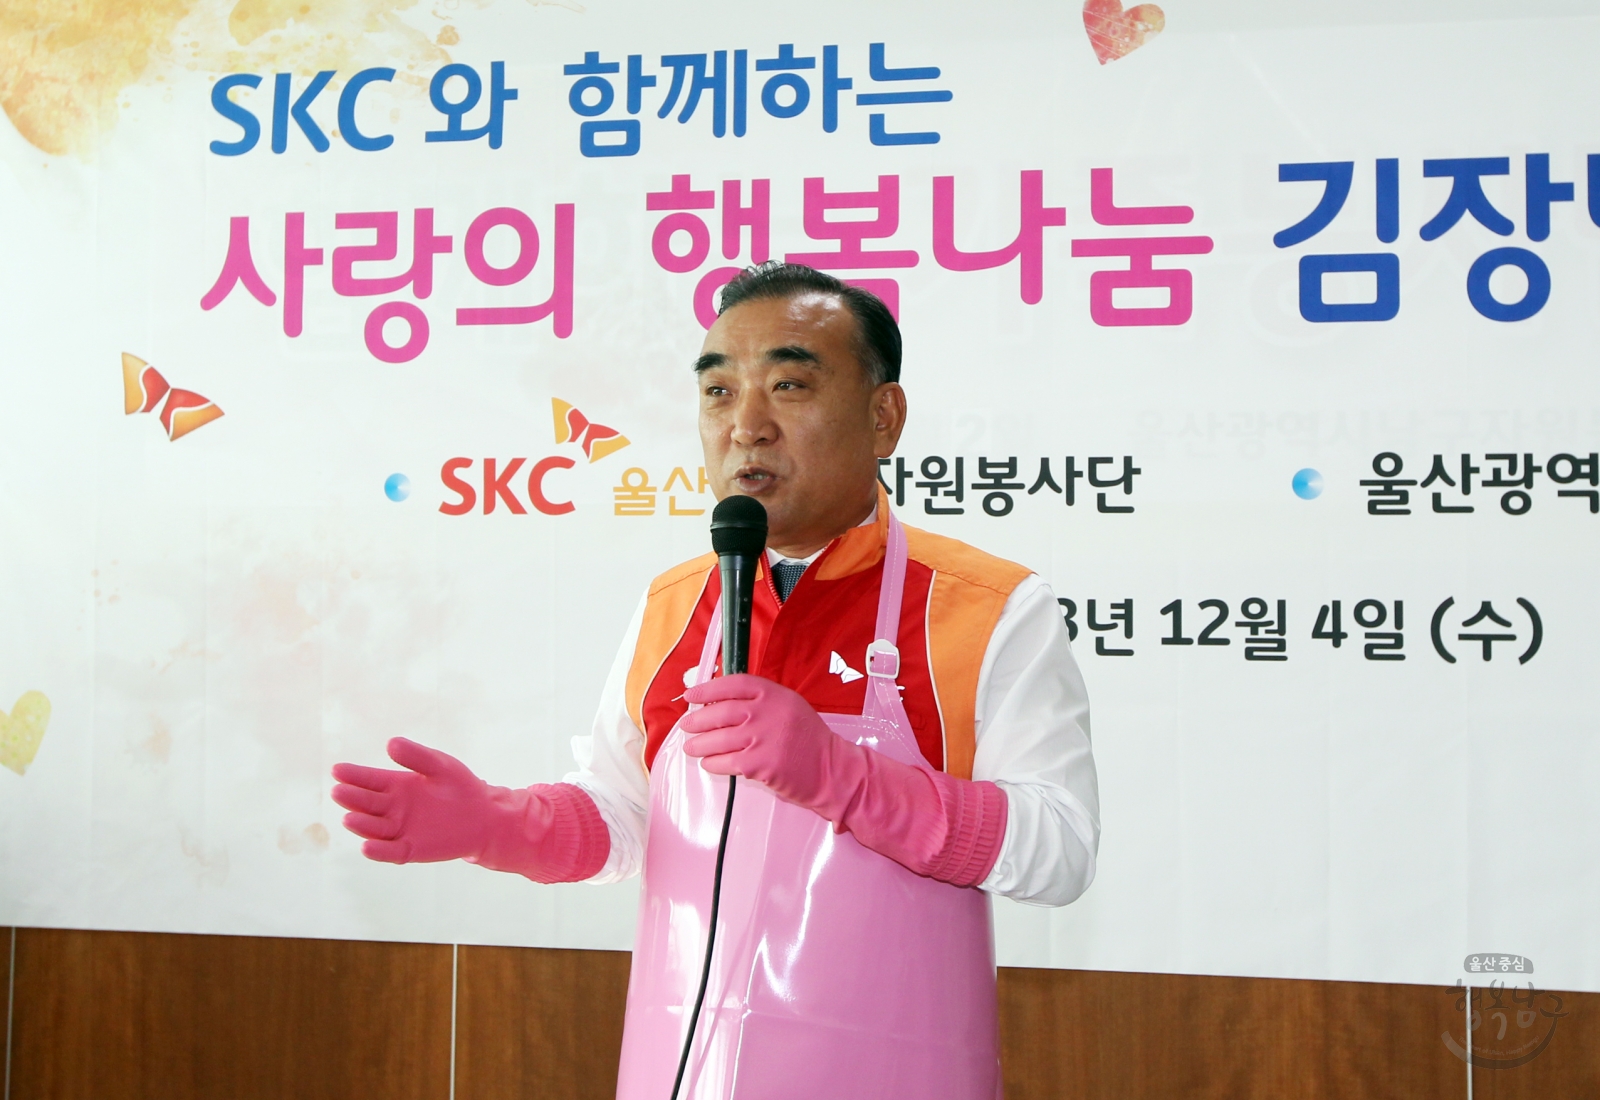 SKC와 함께하는 사랑의 행복나눔 김장담그기 행사 의 사진